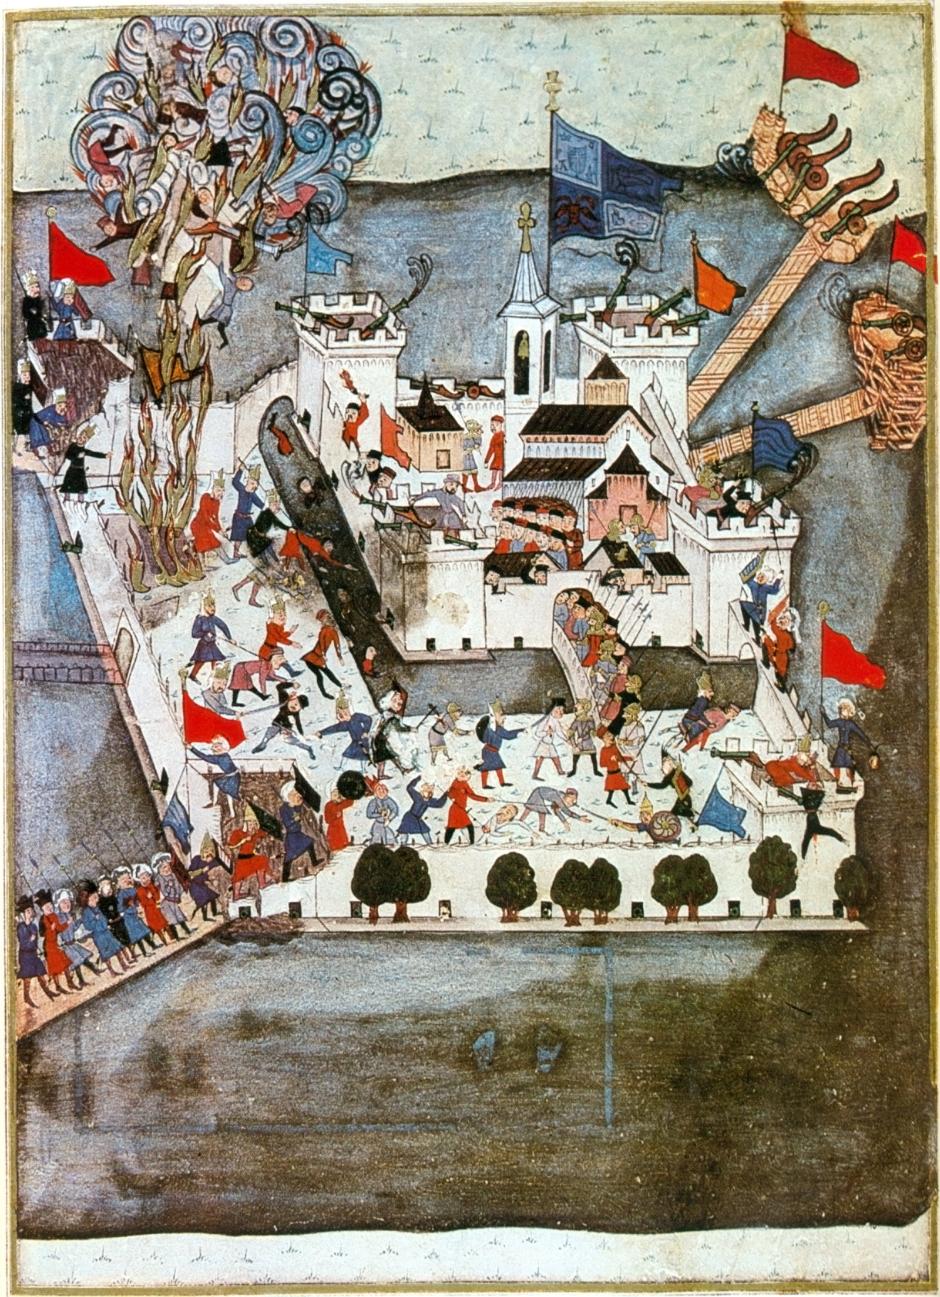 Miniatura del asedio de Szigetvár, siglo XVI